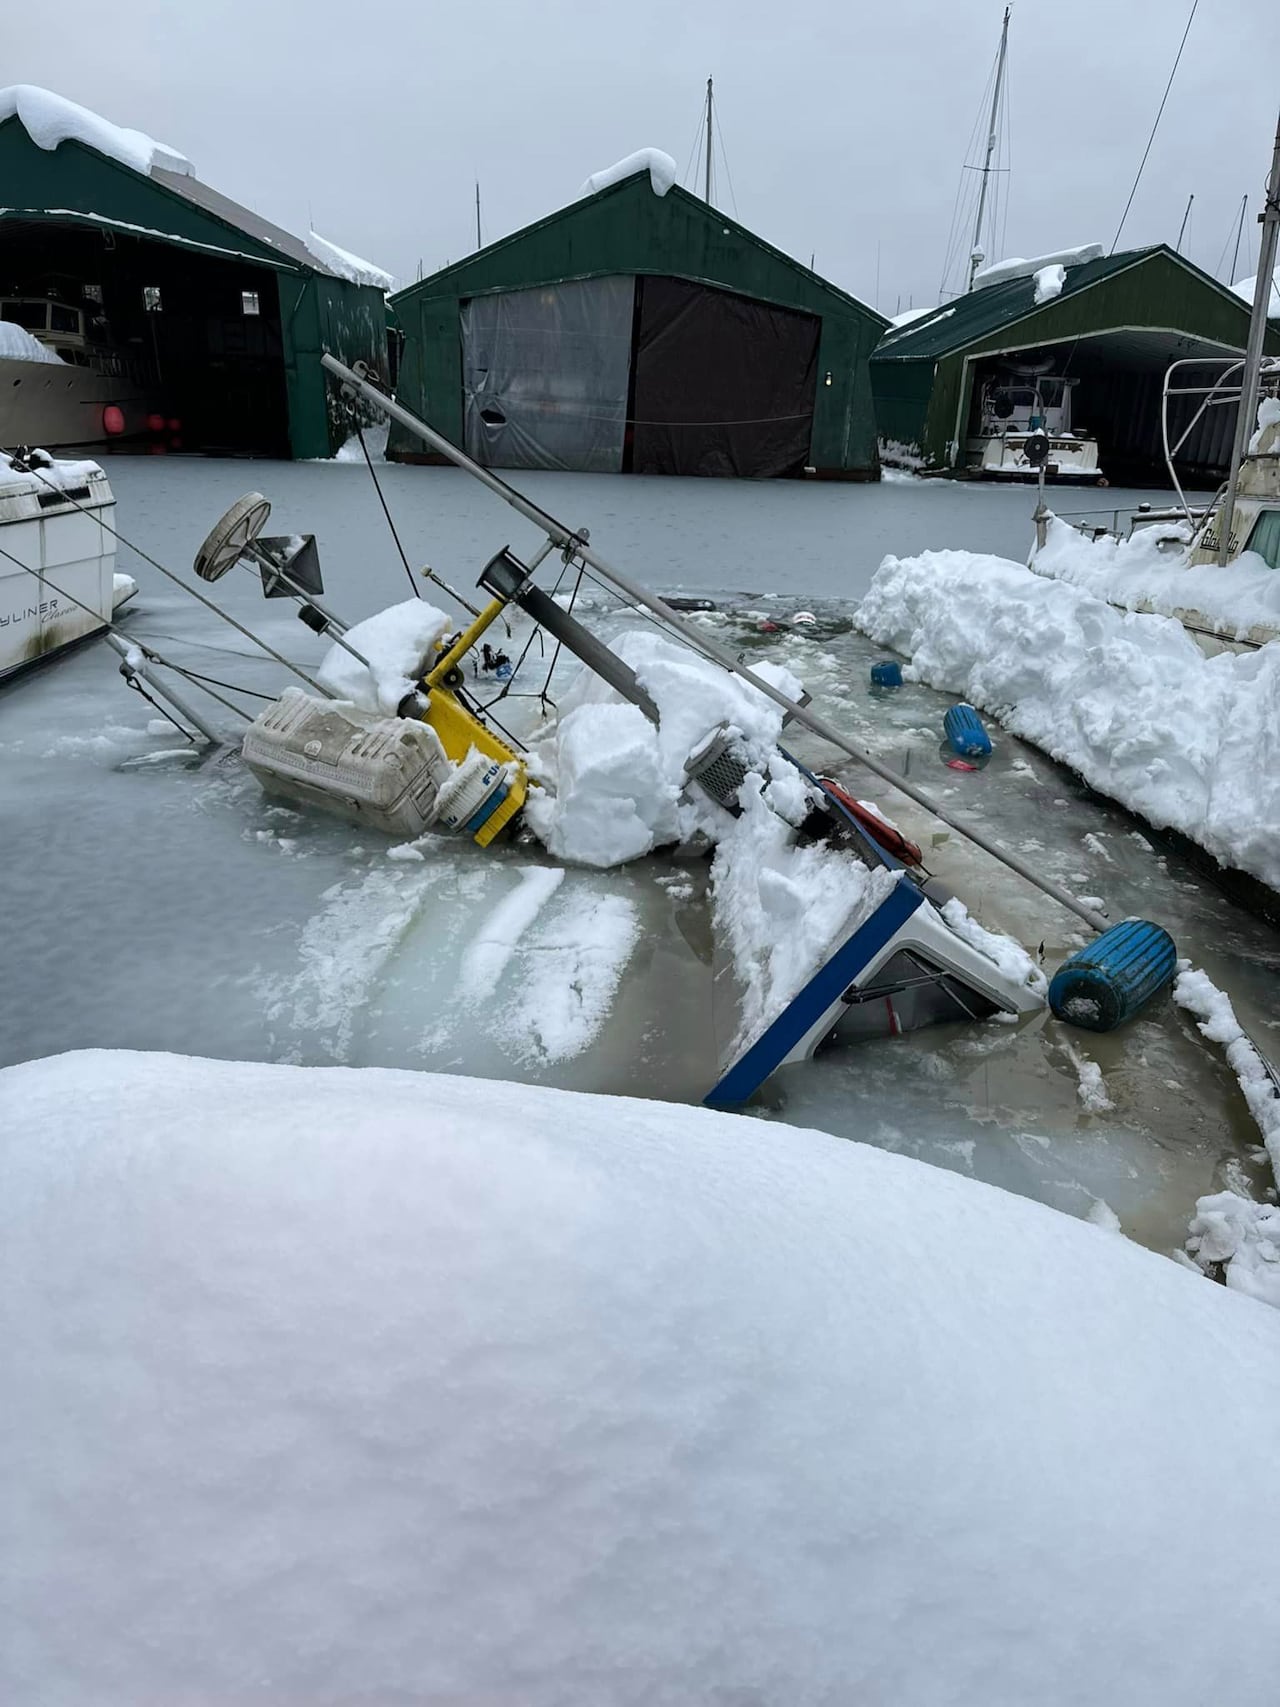 heavy snowfall in juneau, alaska, sinks boats in harbour